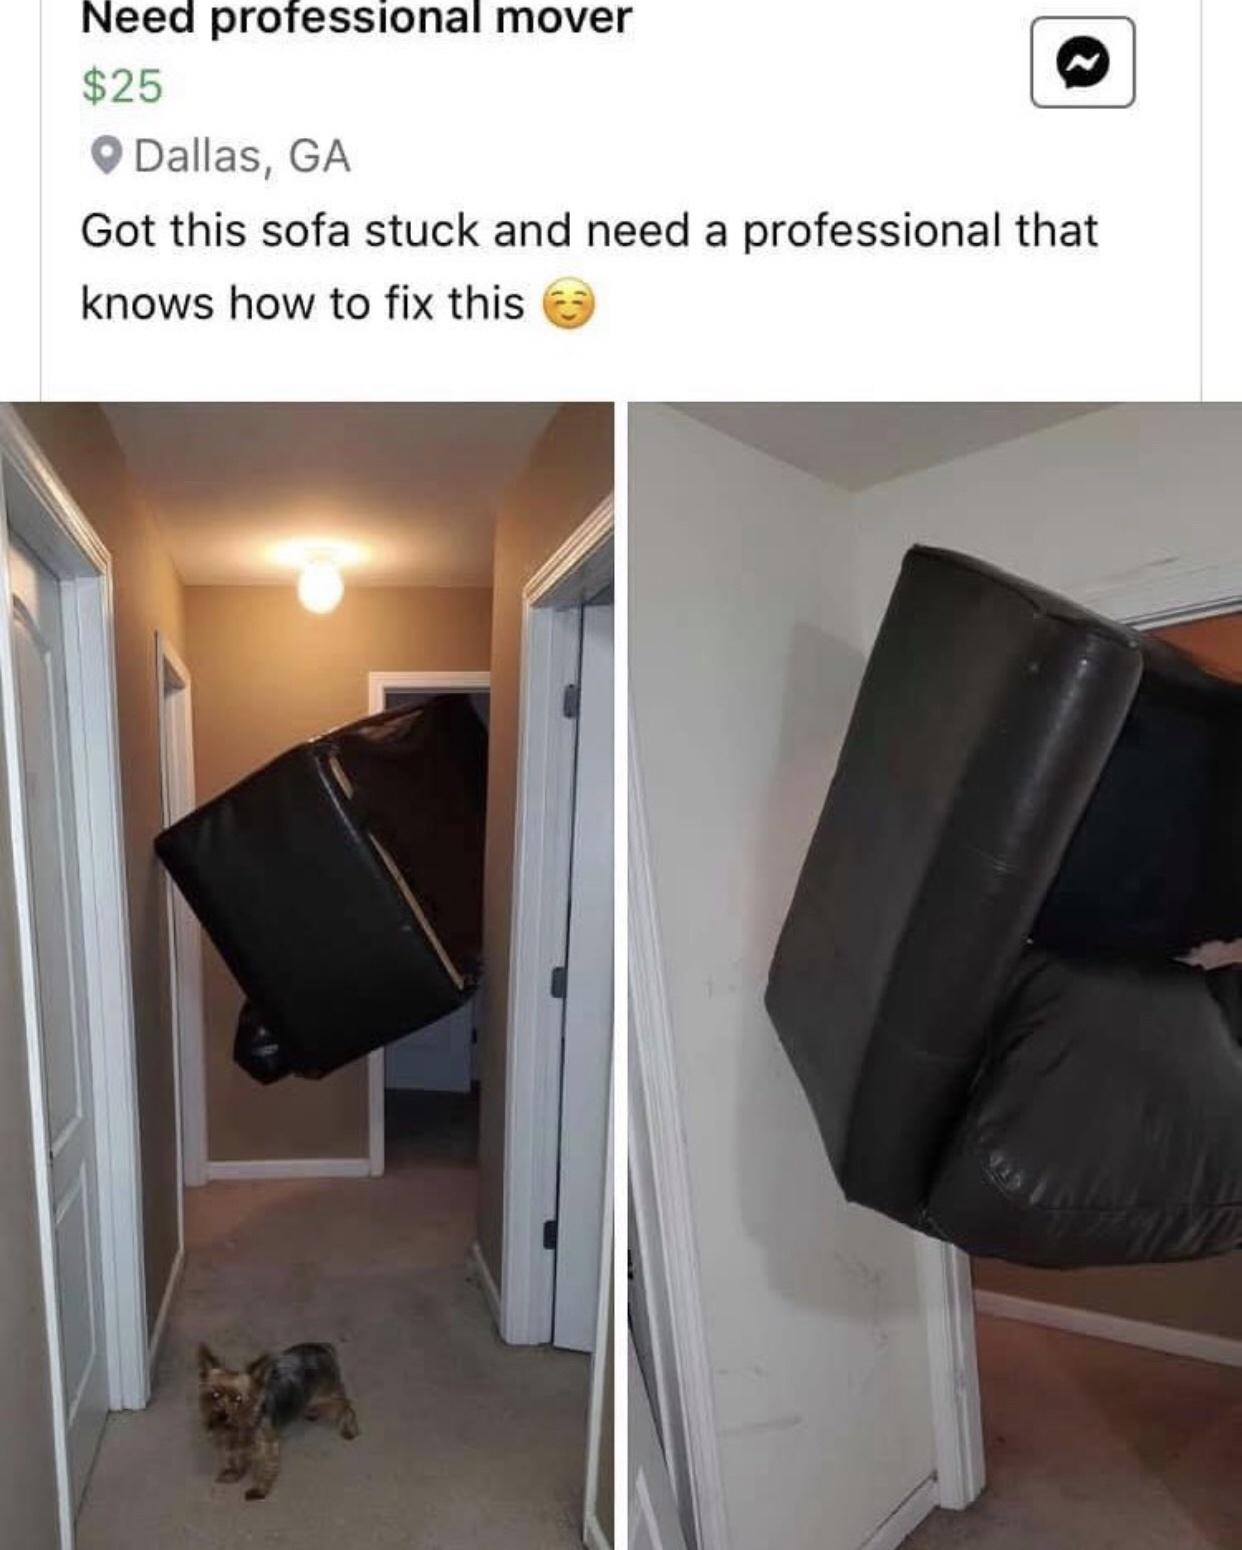 the+sofa+got+stuck